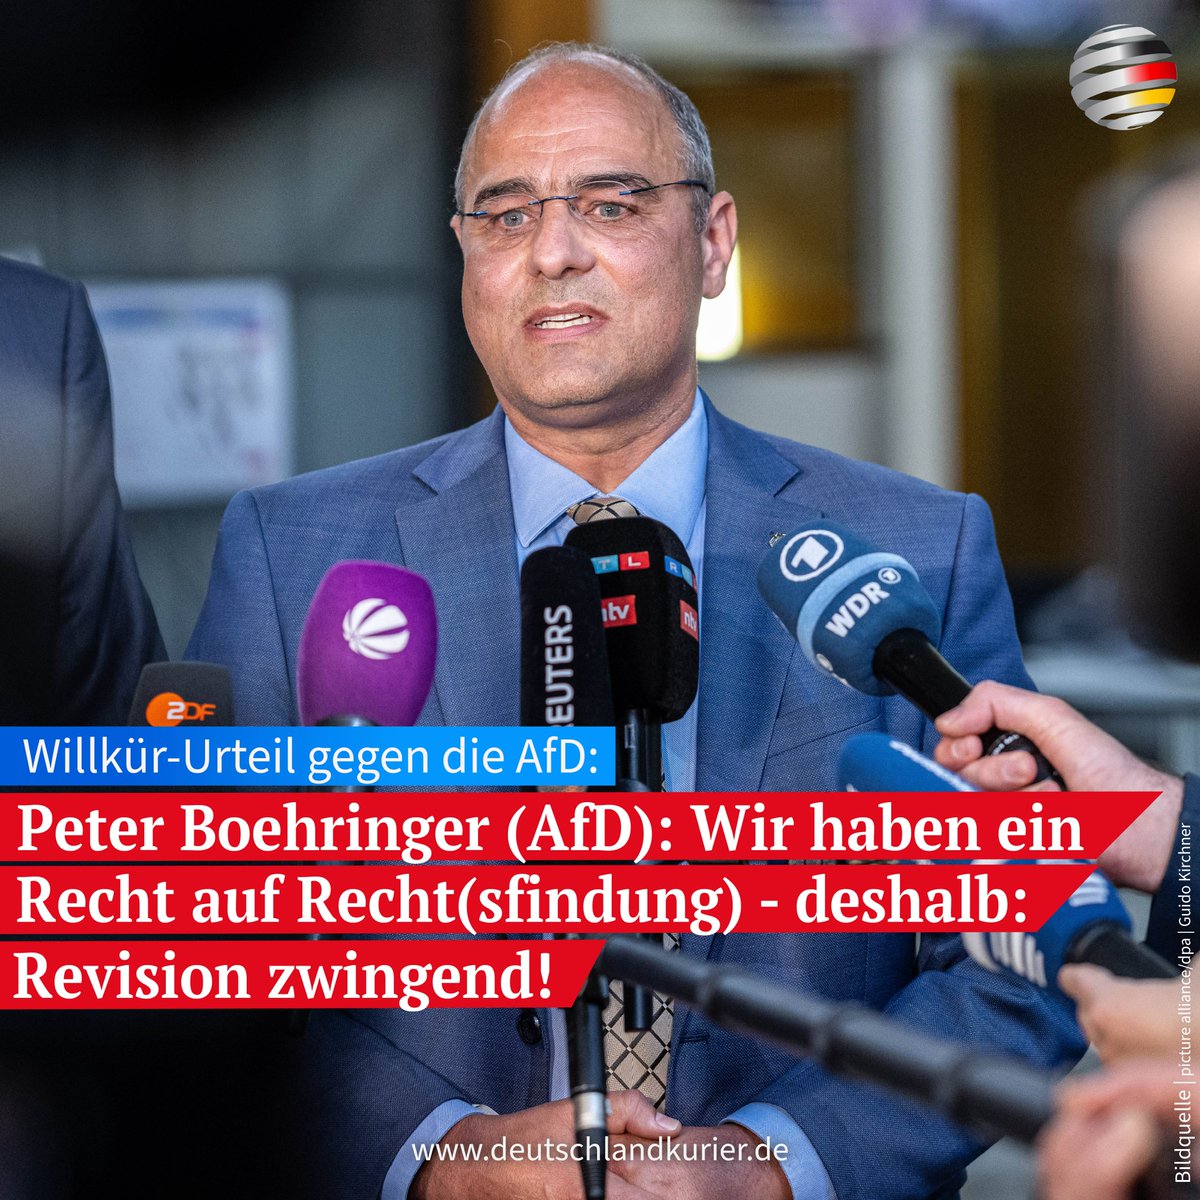 Willkür-Urteil gegen die @AfD: Peter Boehringer (AfD): Wir haben ein Recht auf Recht(sfindung) - deshalb: Revision zwingend! @PeterBoehringer (AfD), Mitglied des Deutschen Bundestages und stellvertretender Bundesvorsitzender der Partei, hat angekündigt, die AfD werde gegen das